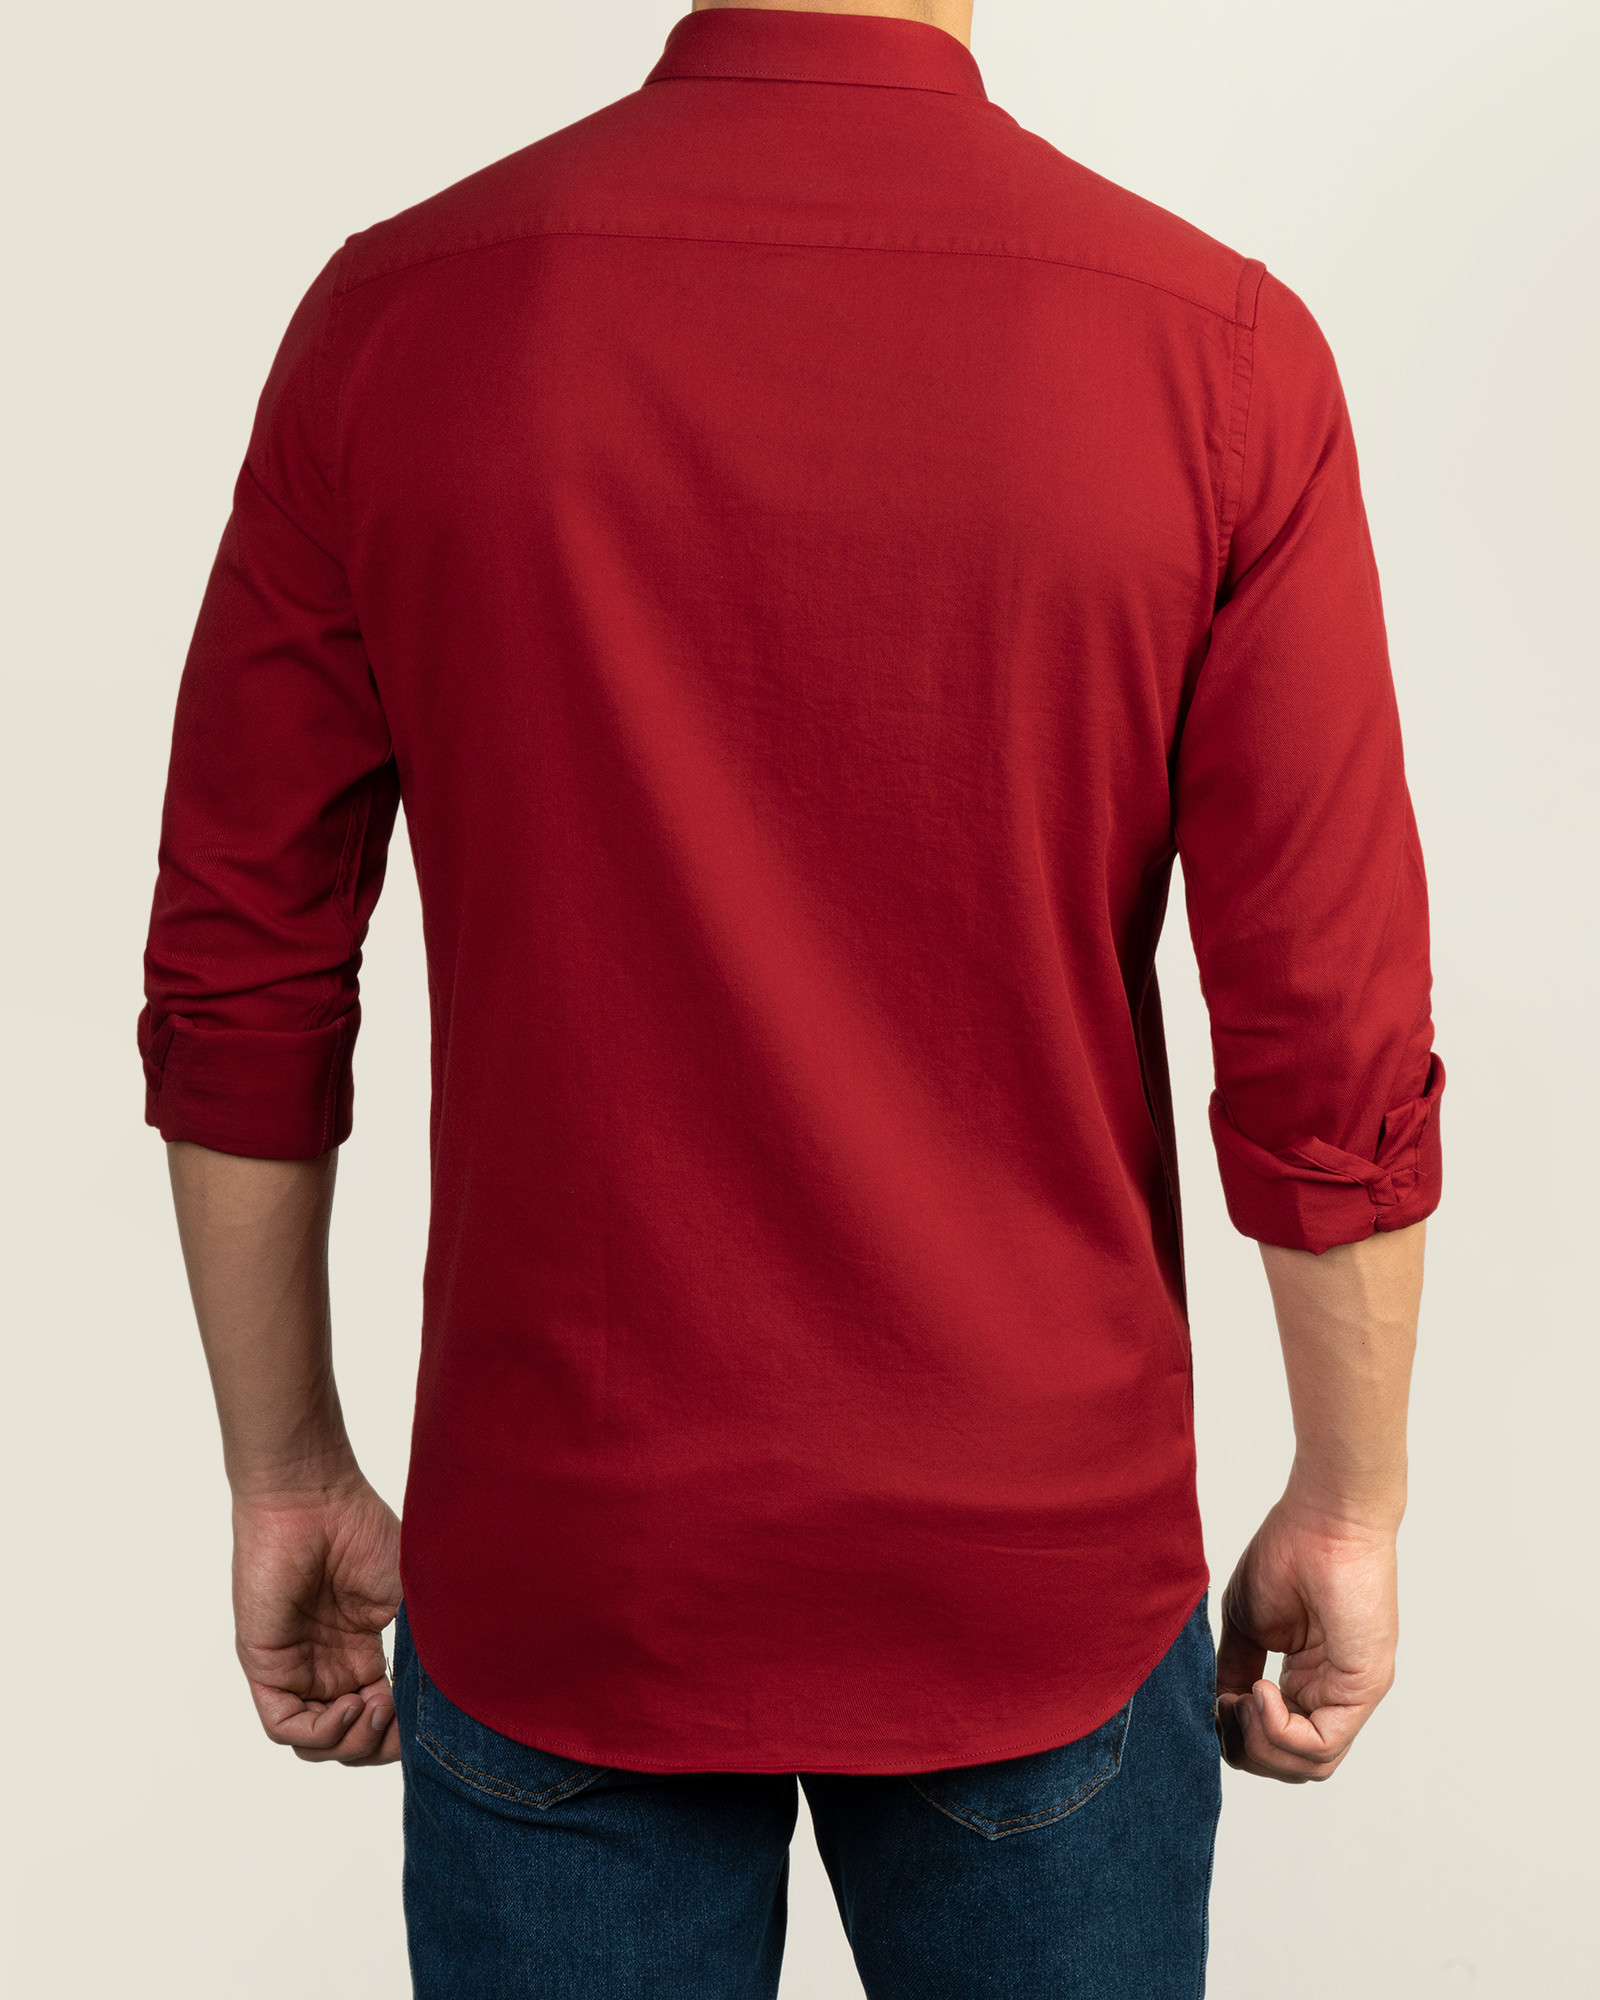 پیراهن شیک قرمز مردانه ساده 20421226